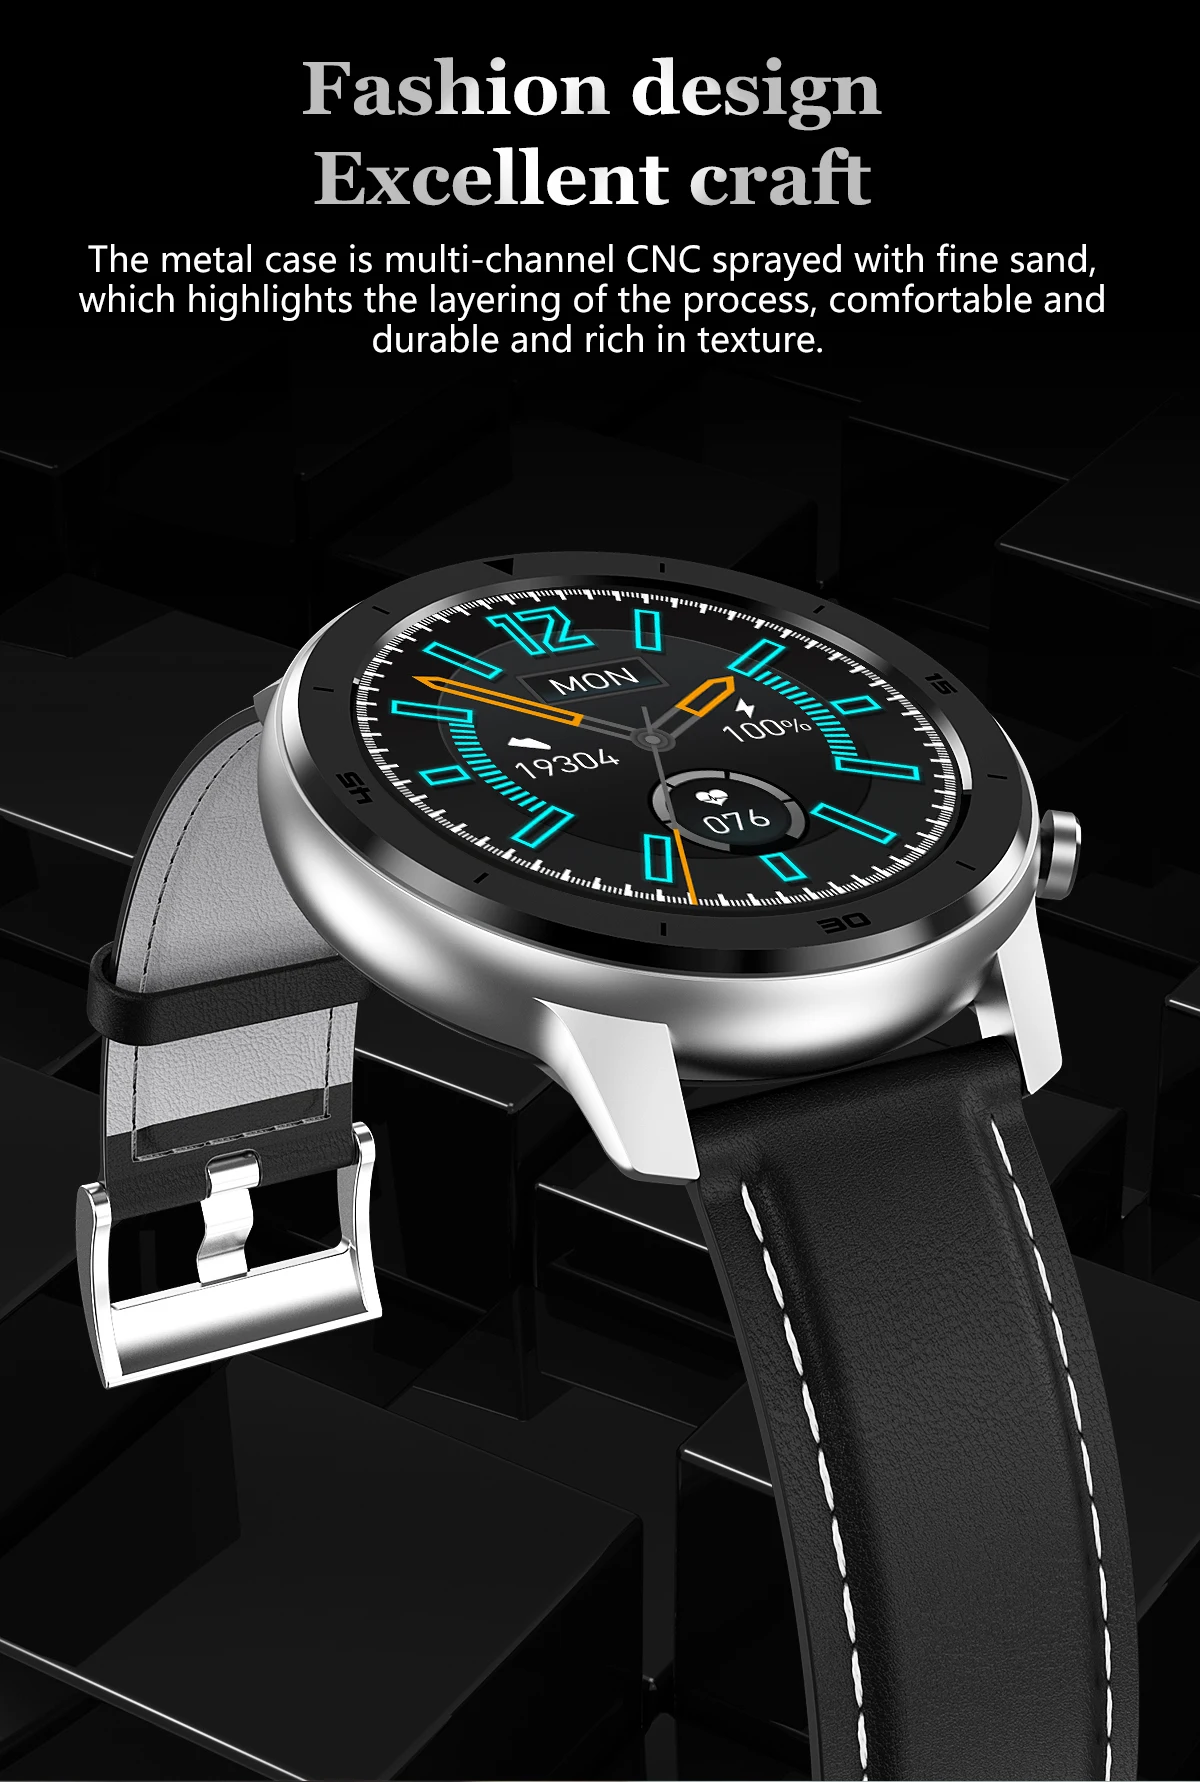 DT78 Смарт-часы для мужчин и женщин, умные часы, браслет, фитнес-трекер, беспроводные устройства, водонепроницаемый монитор сердечного ритма